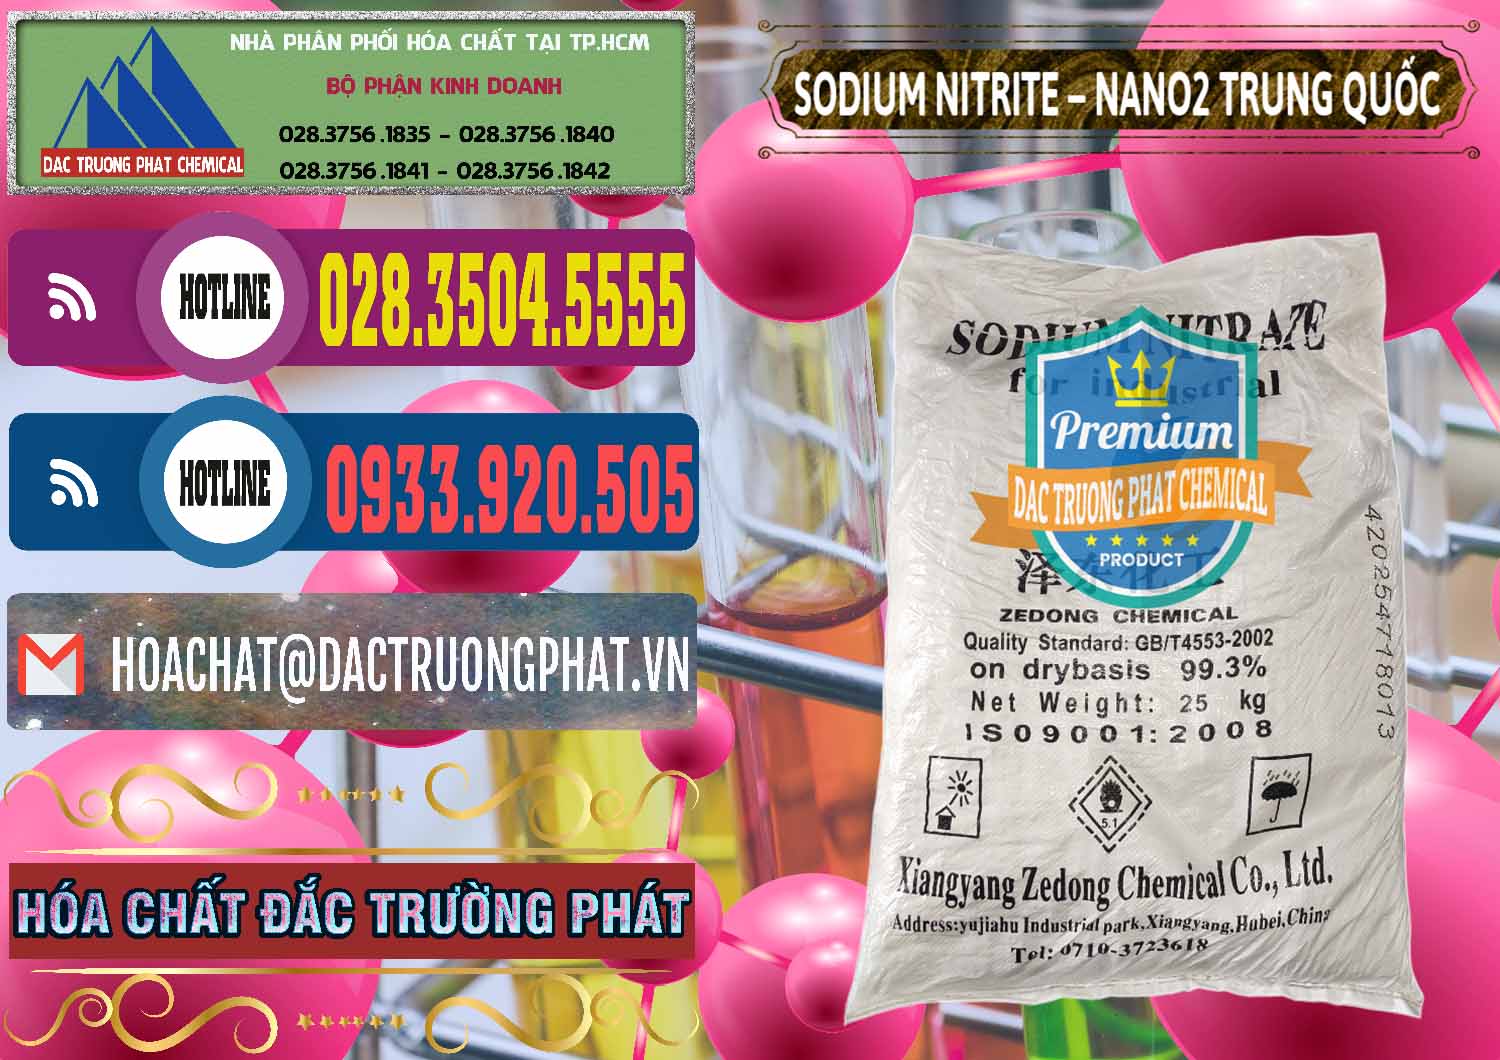 Cty kinh doanh & bán Sodium Nitrite - NANO2 Zedong Trung Quốc China - 0149 - Công ty cung cấp ( phân phối ) hóa chất tại TP.HCM - muabanhoachat.com.vn